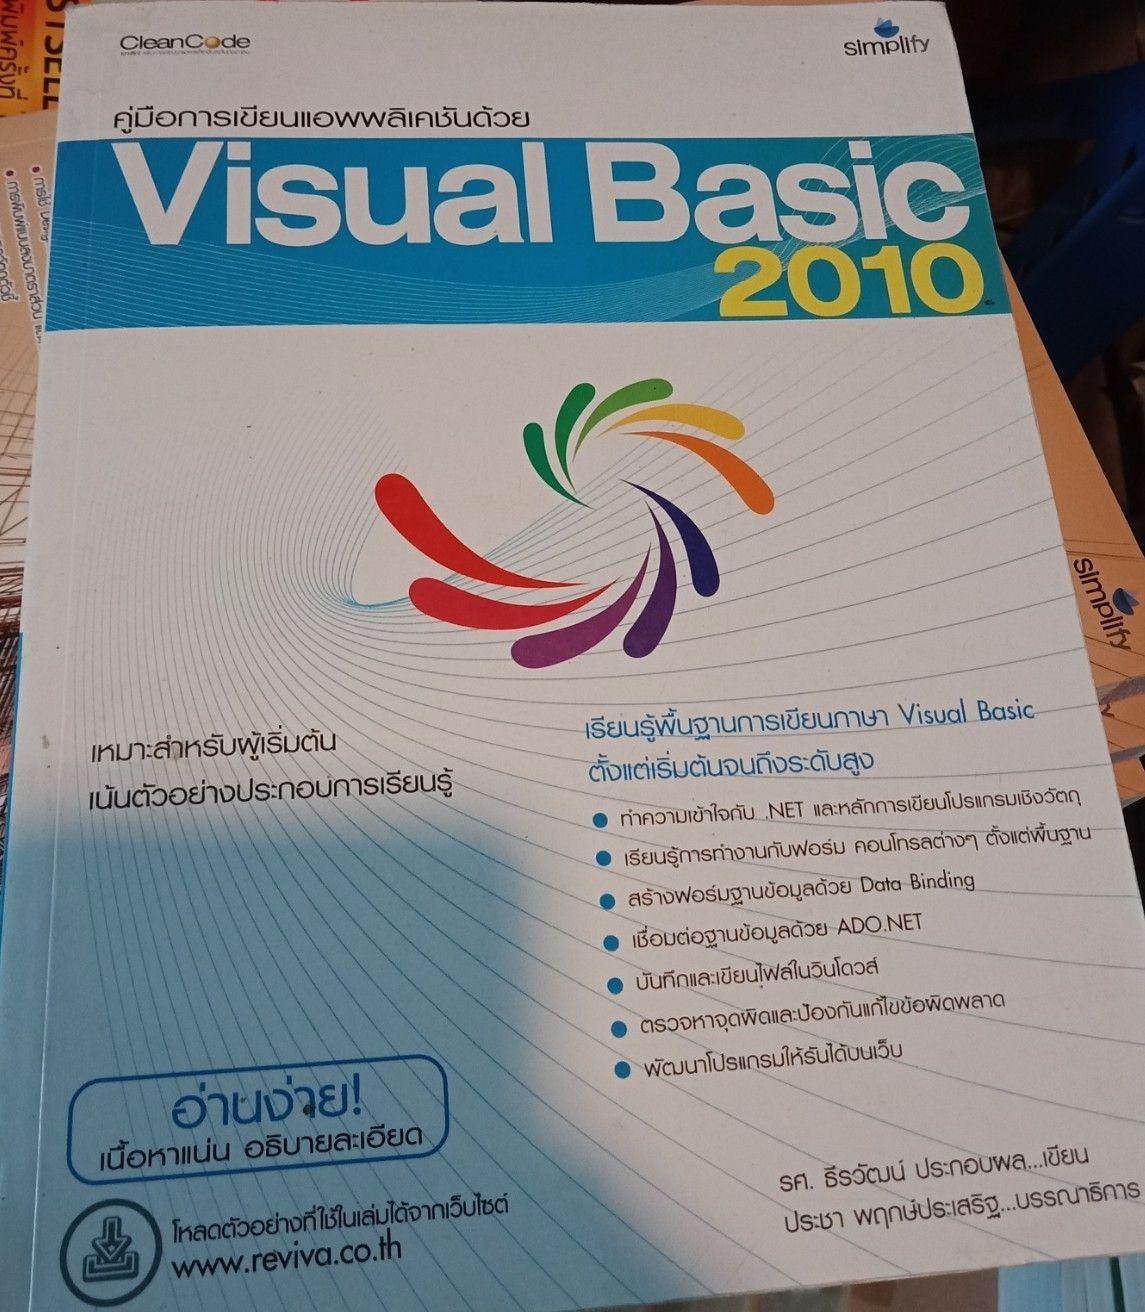 การเขียนแอพพลิเคชันด้วย Visual Basic 2010 ฉบับสมบูรณ์